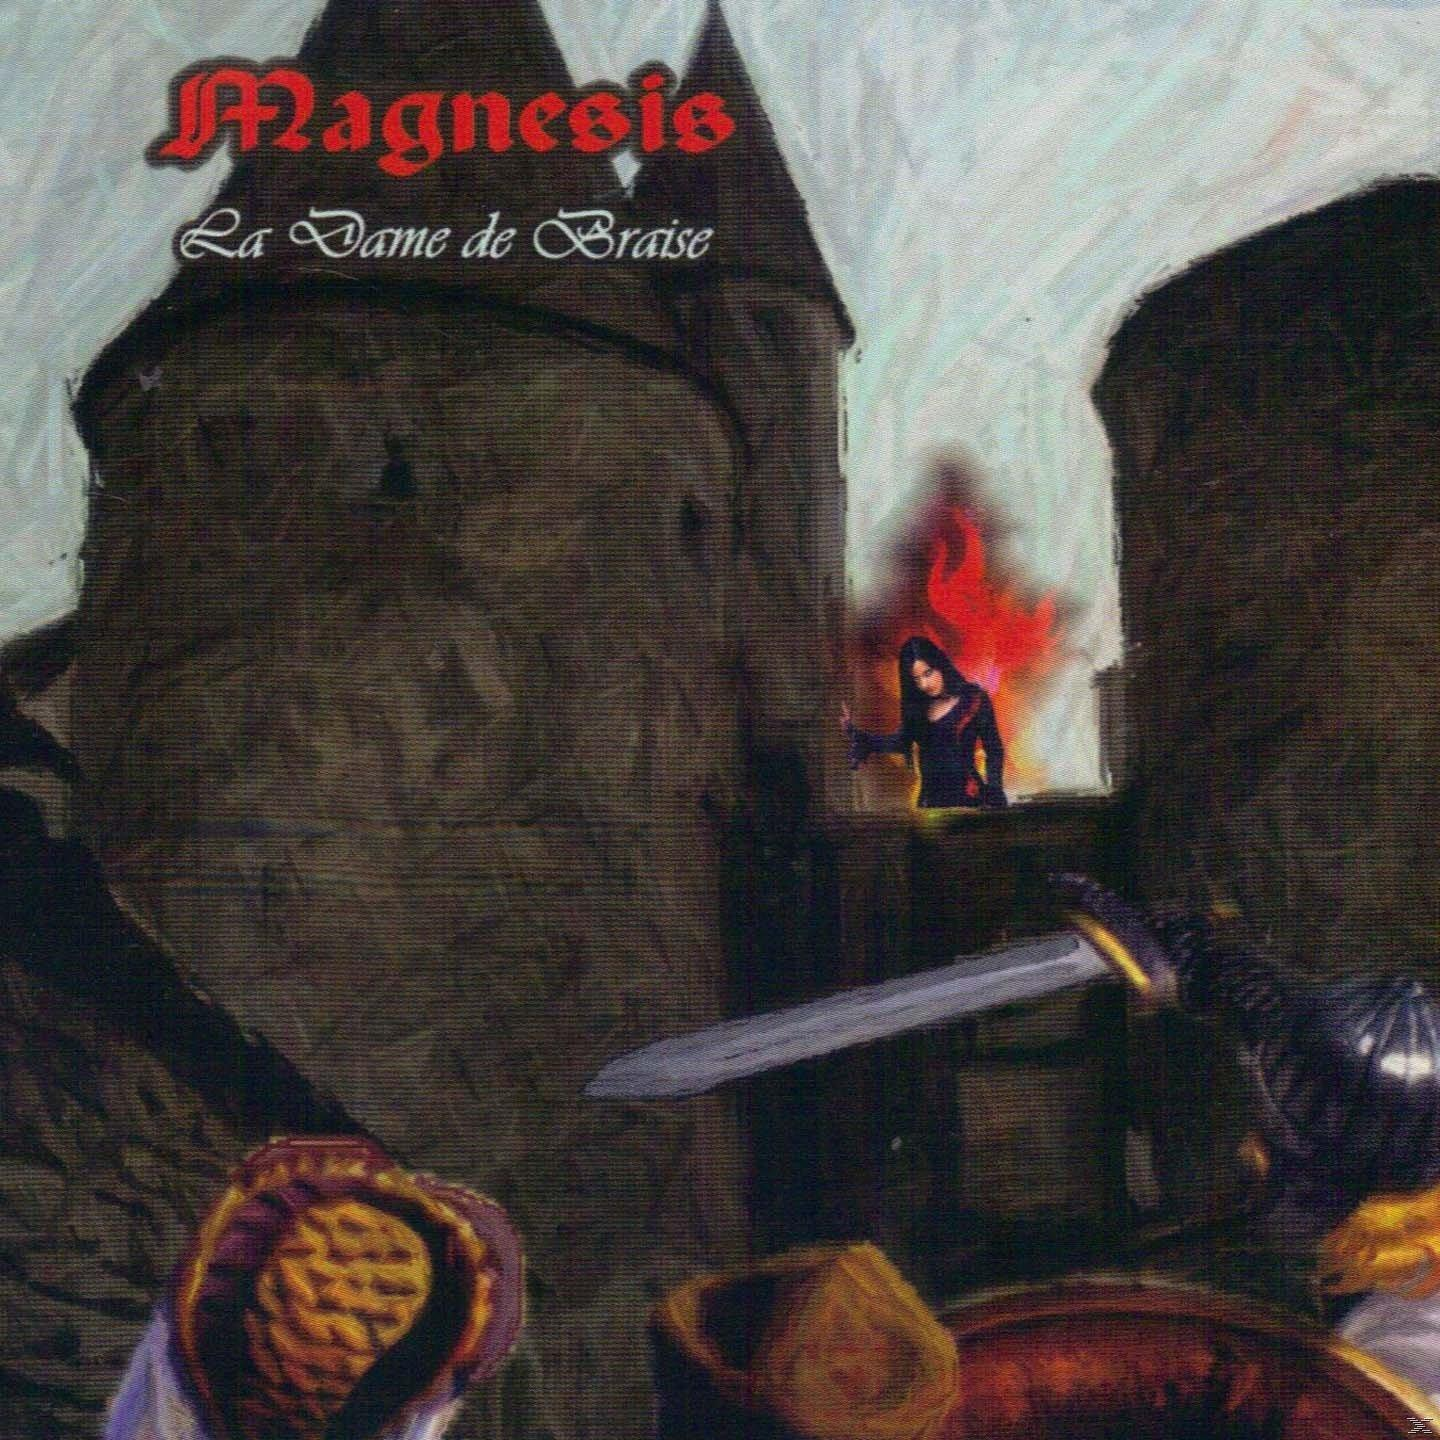 Magnesis - La Dame (CD) de - Braise